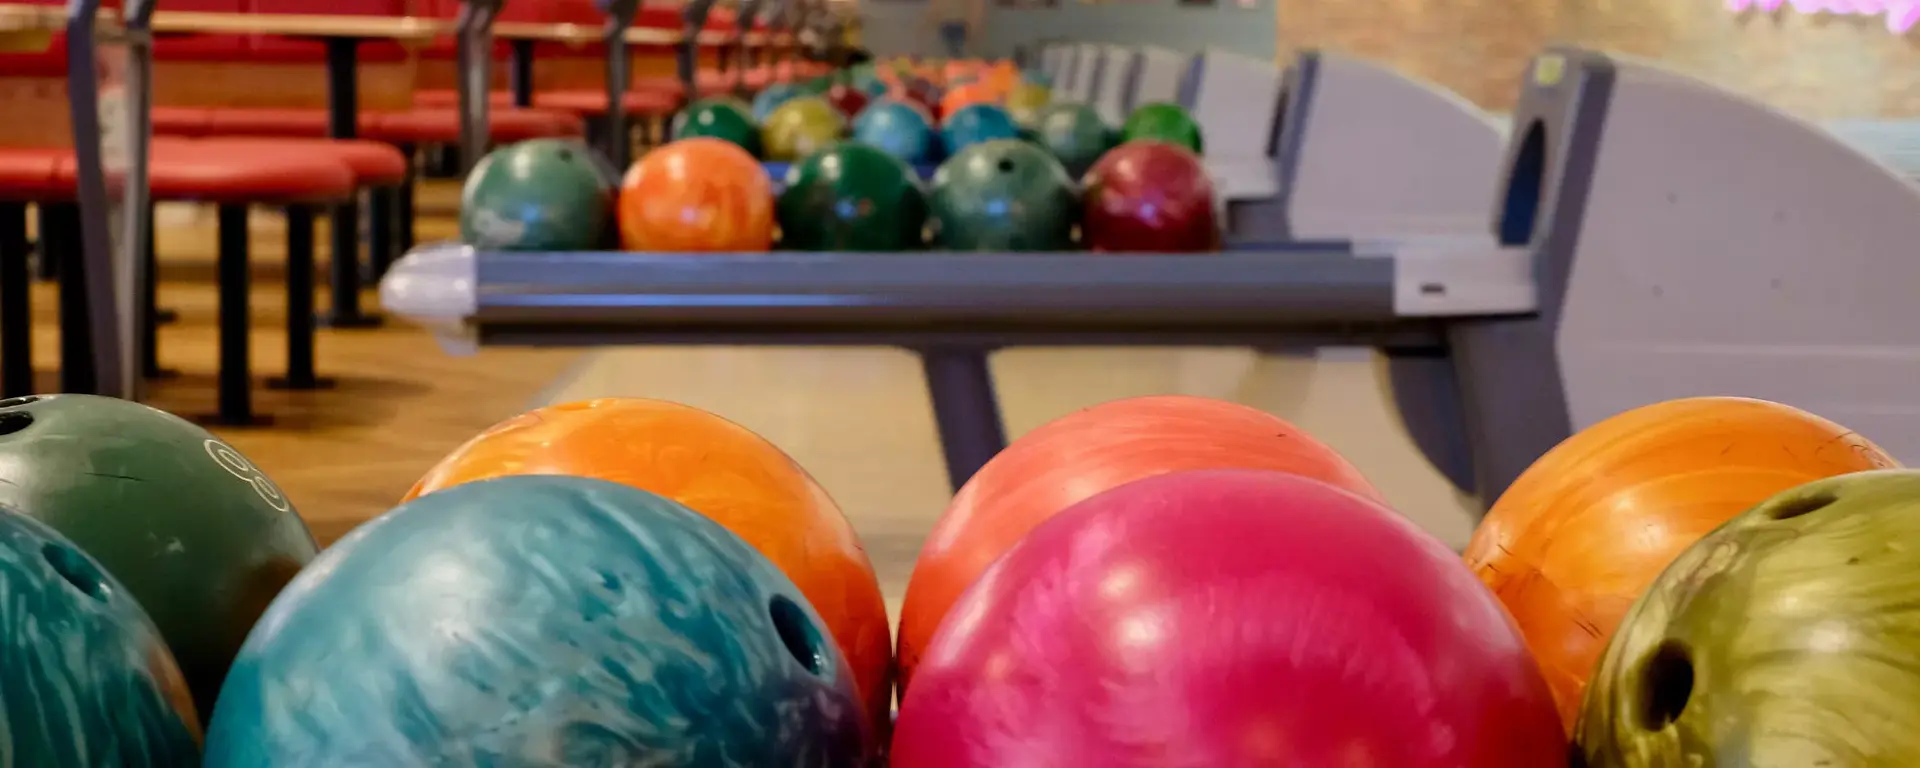 Hollywood bowl bowling alley uk header 15